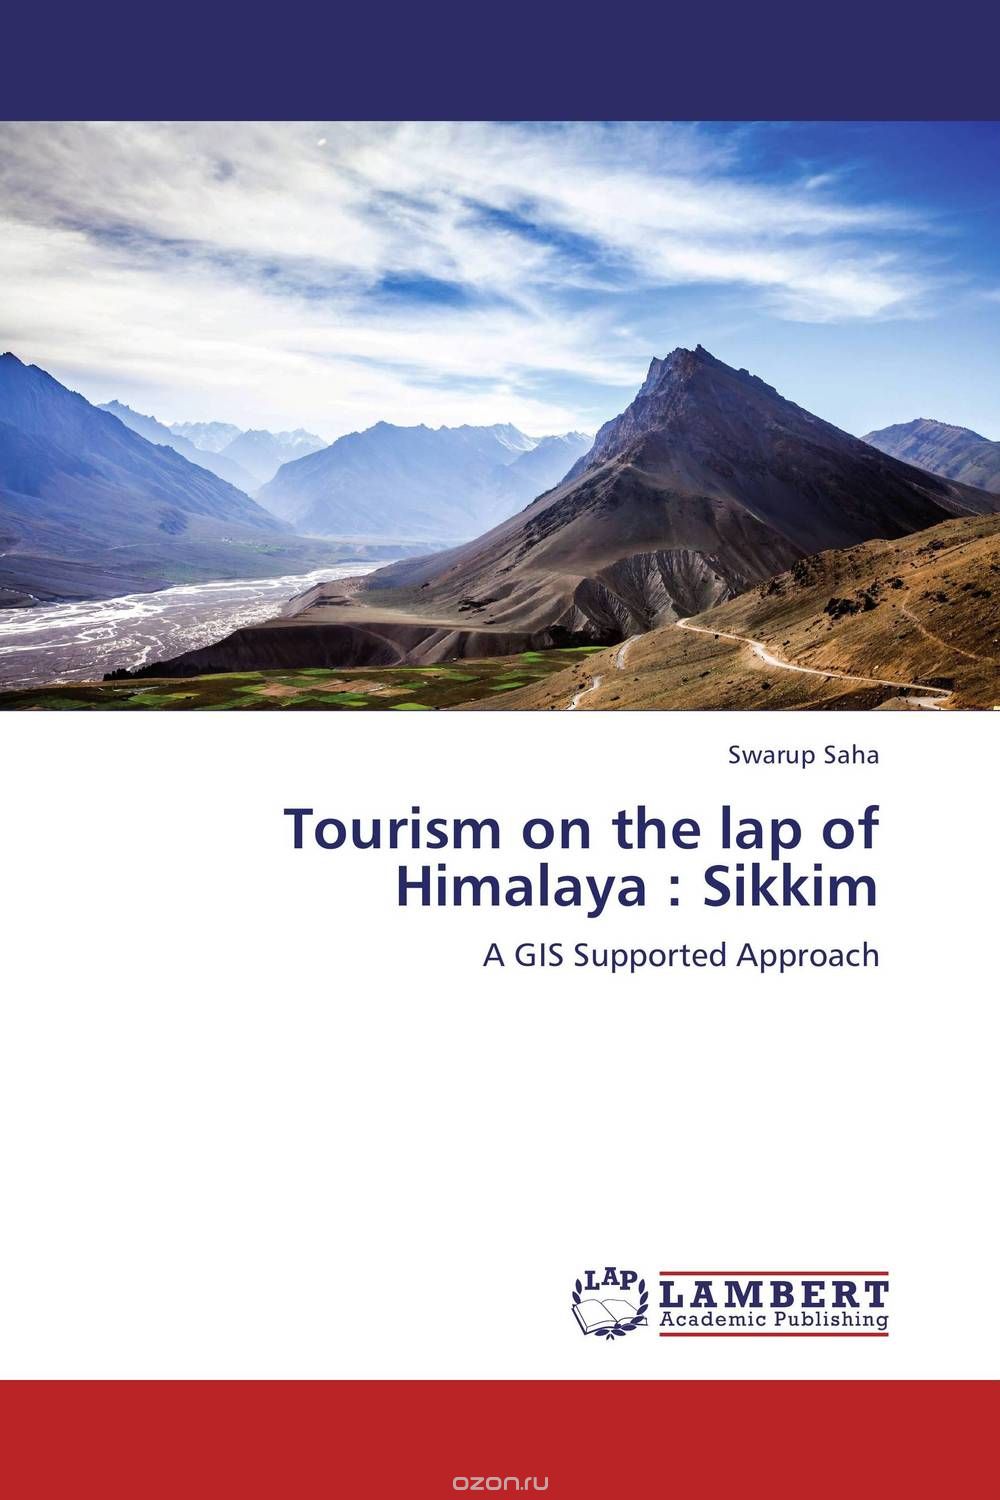 Tourism on the lap of Himalaya : Sikkim